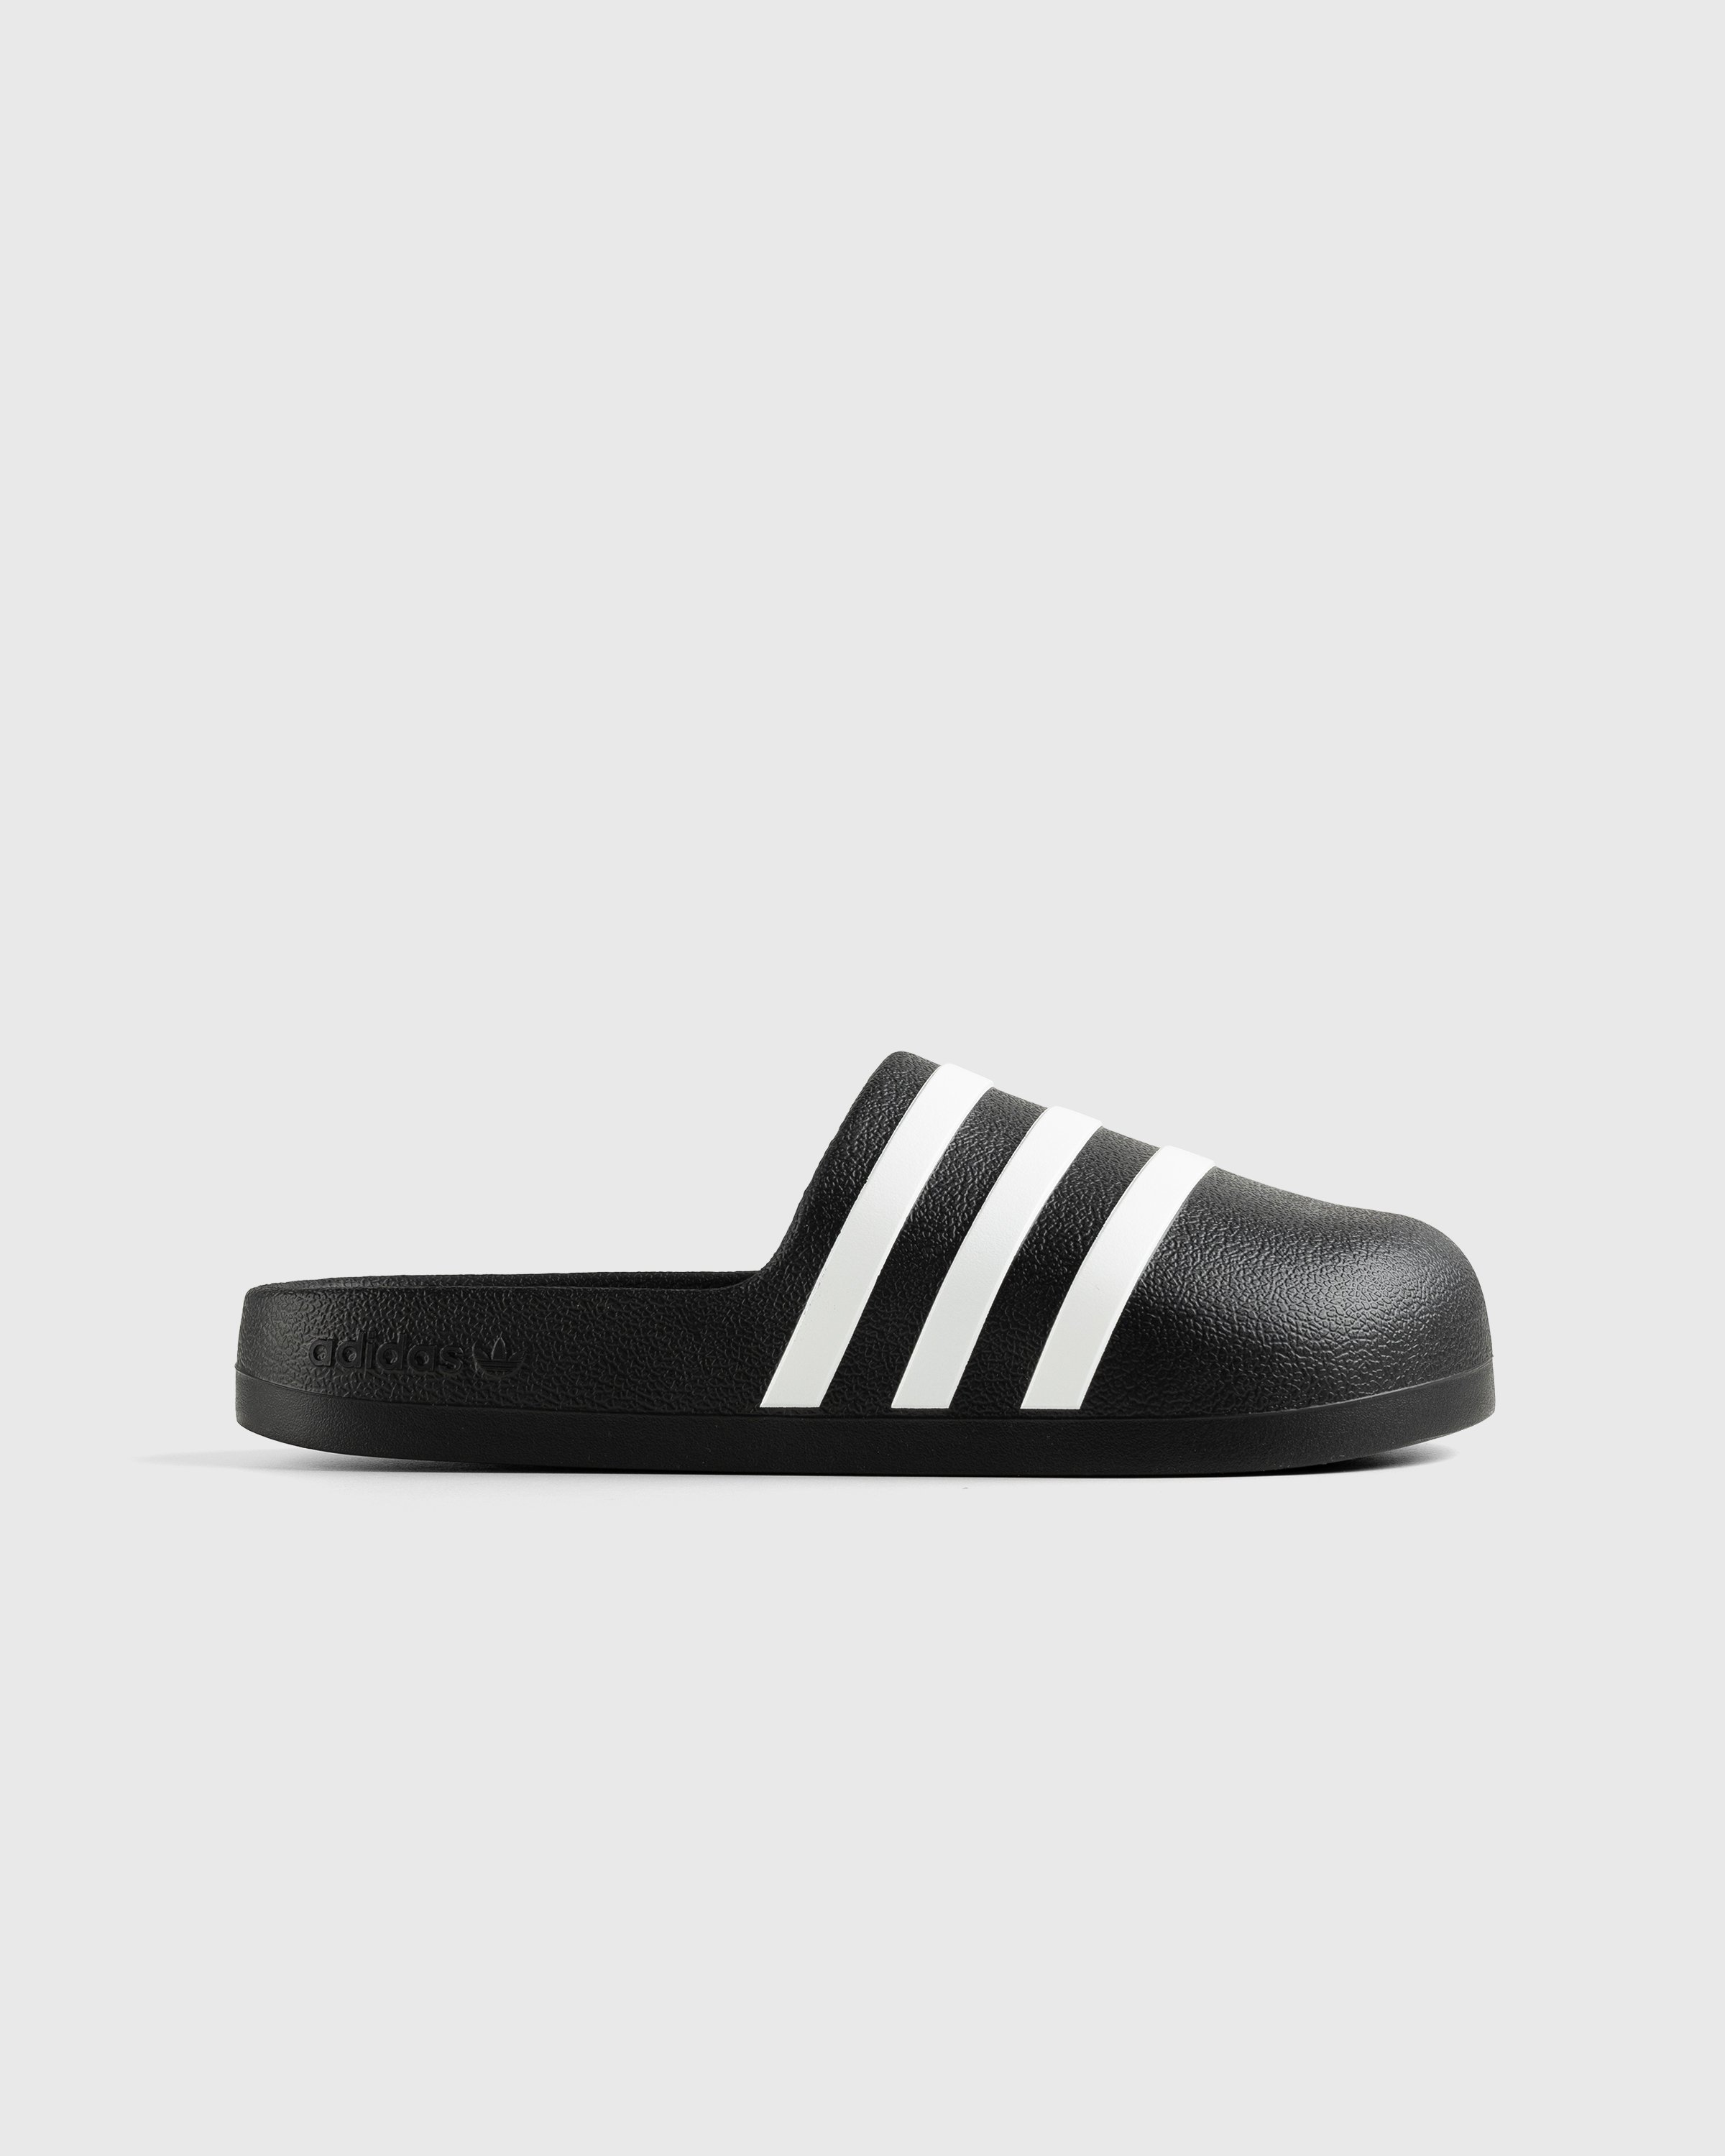 Adidas - Adifom Adilette Black/White/Black - Footwear - Black - Image 1